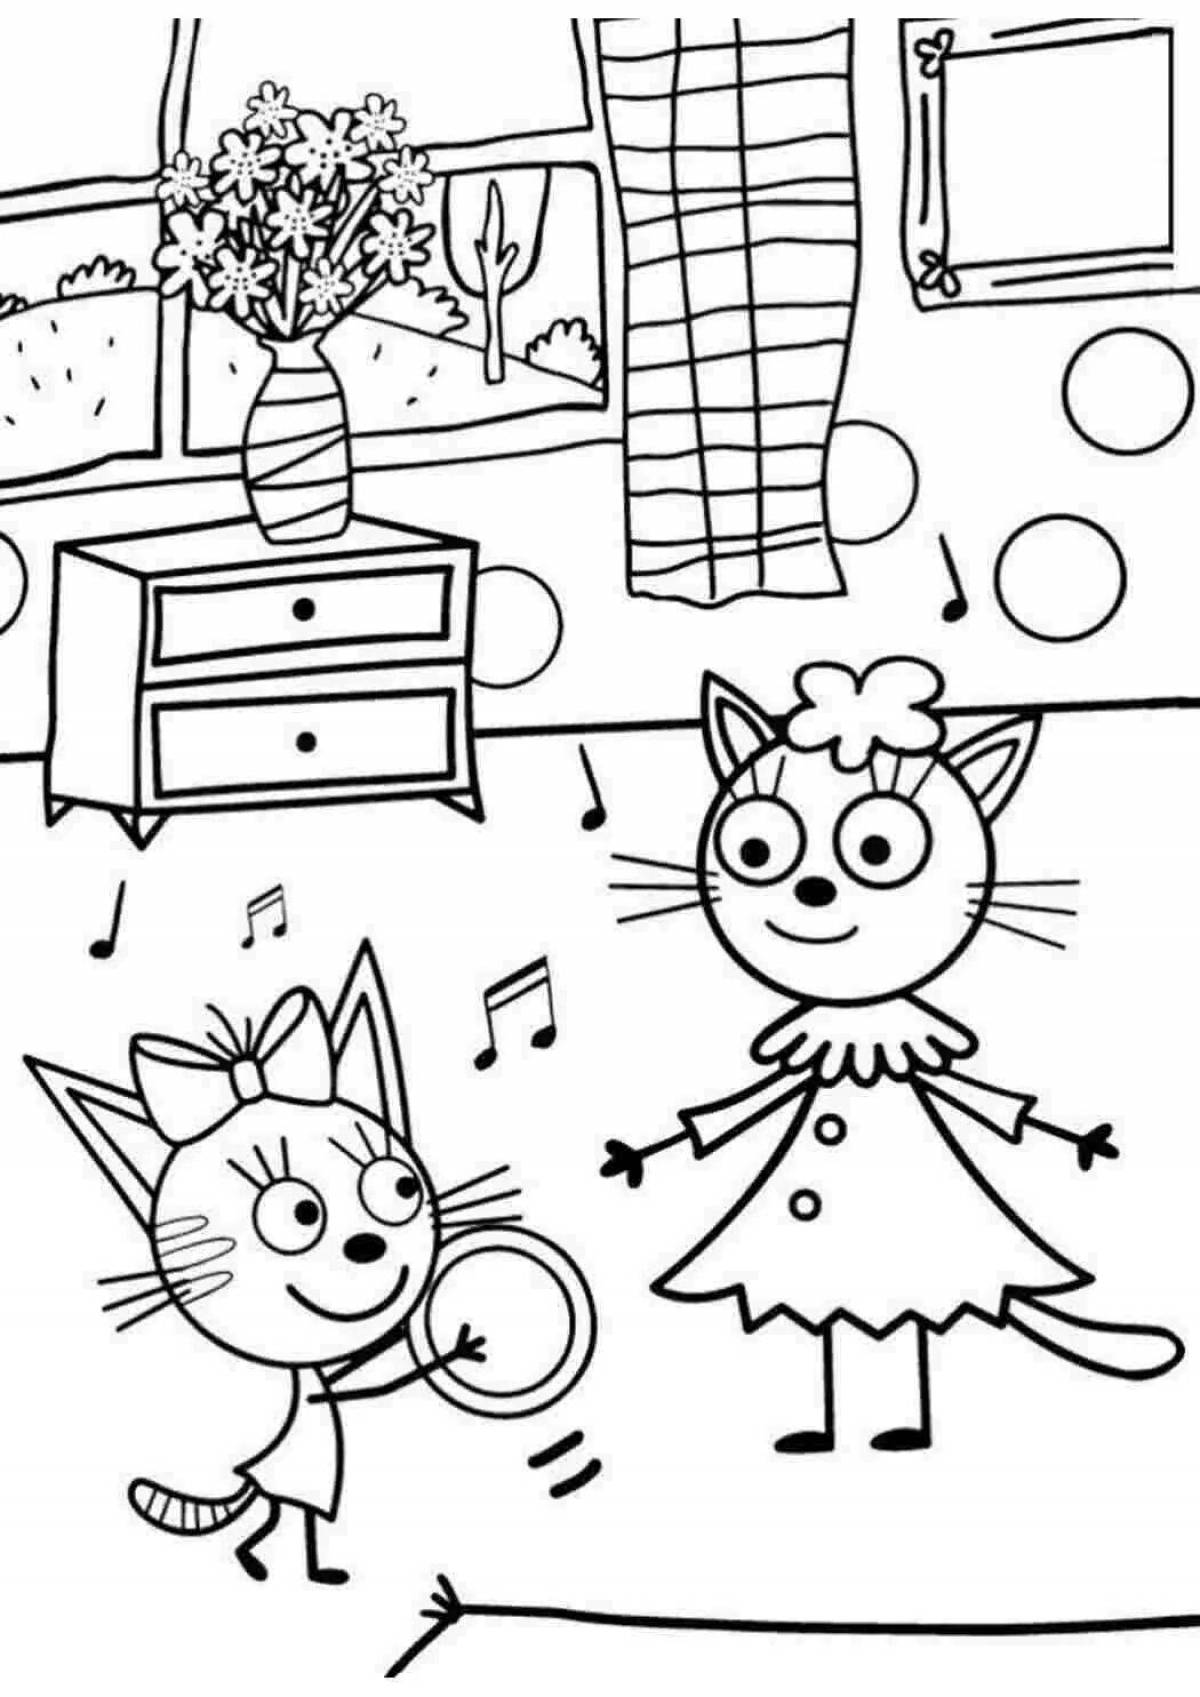 Креативная раскраска для девочек 3 года 3 кота